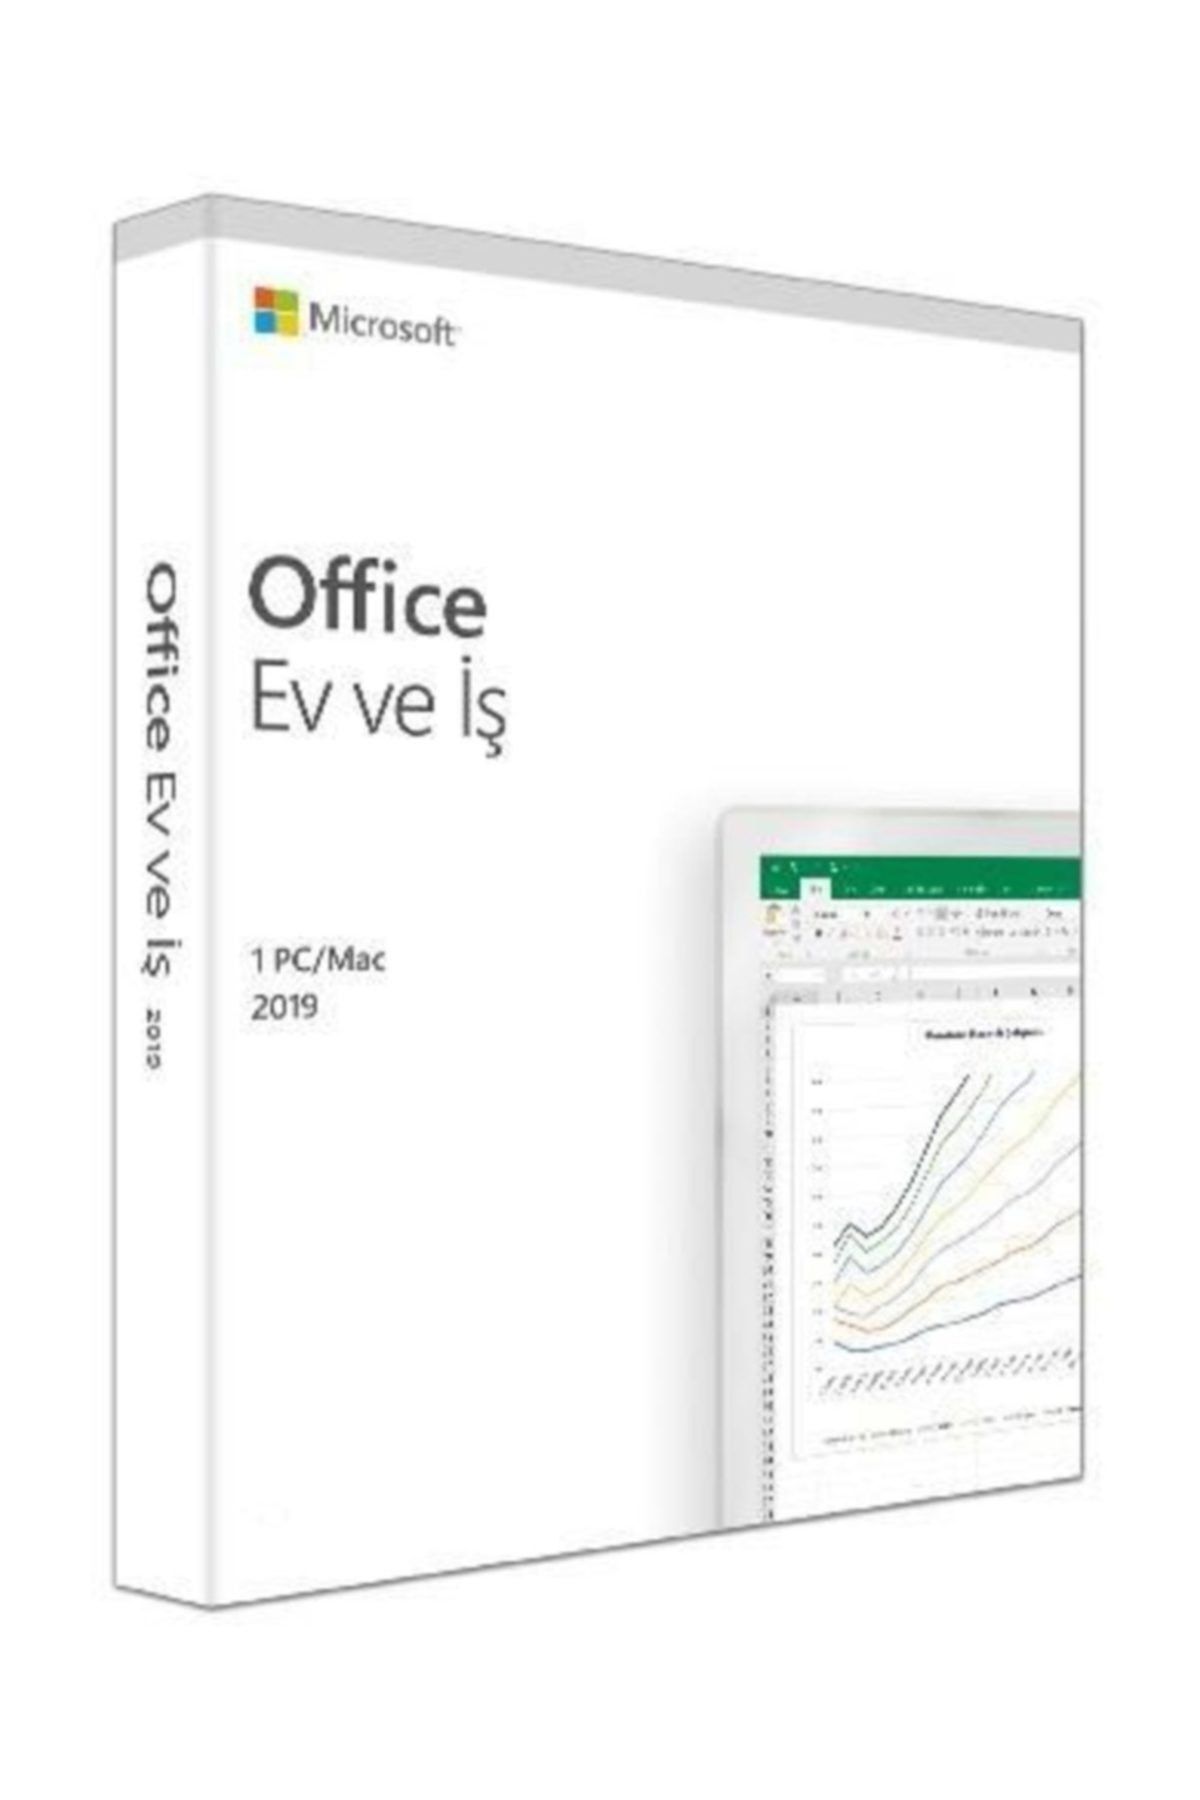 Microsoft Office 2019 Ev Ve Iş 32/64 Bit Türkçe Kutu T5d-03258